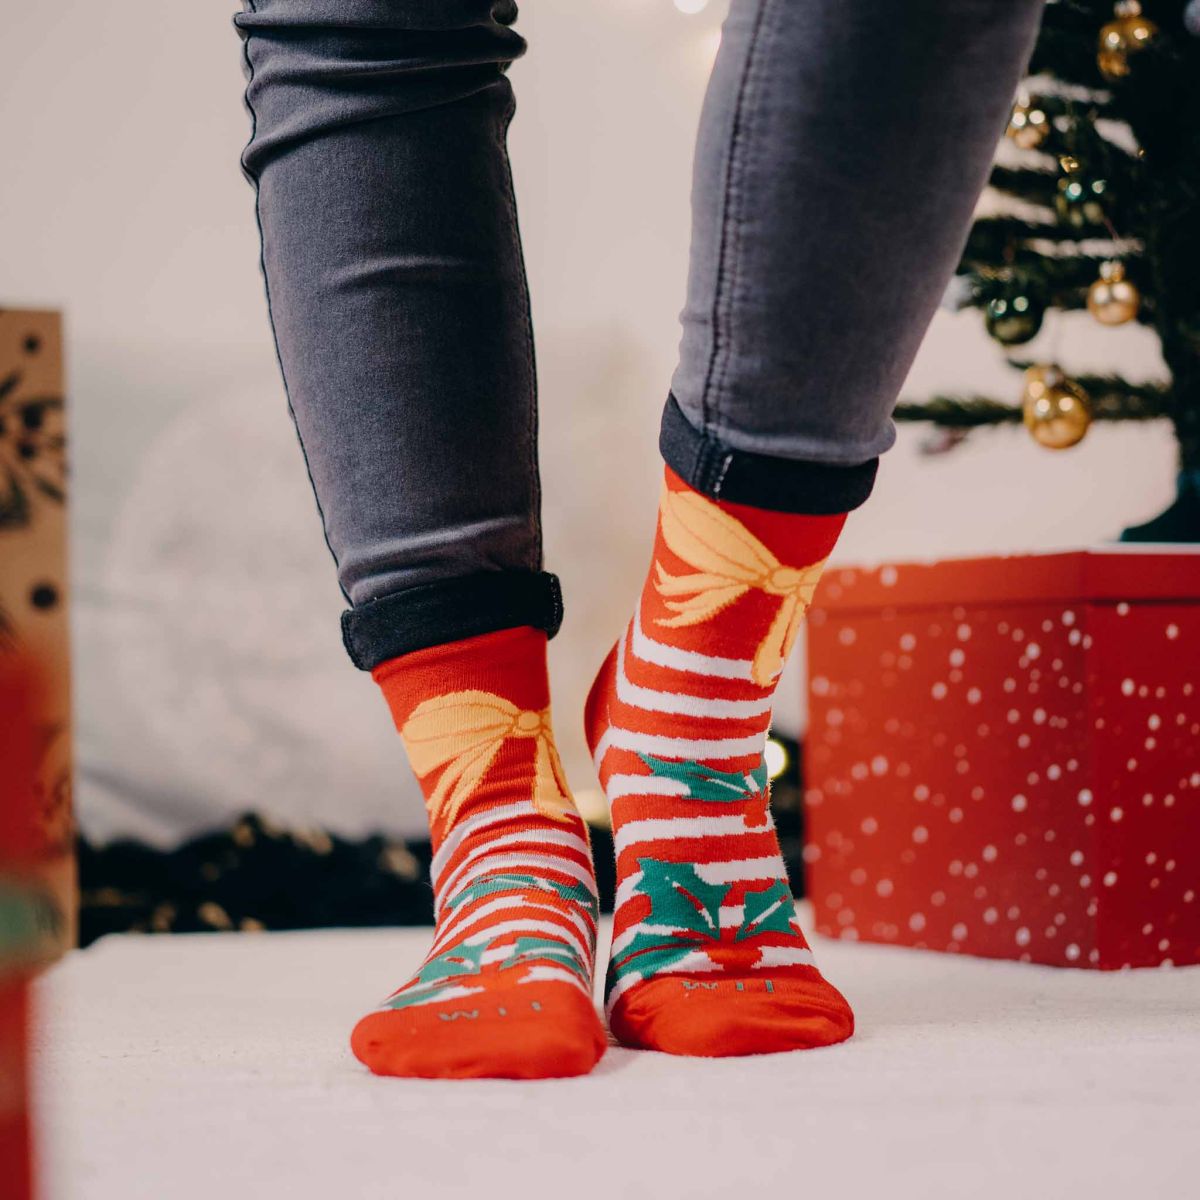 Socken - Weihnachten 3 + Weihnachtskugel + Geschenkbox p5